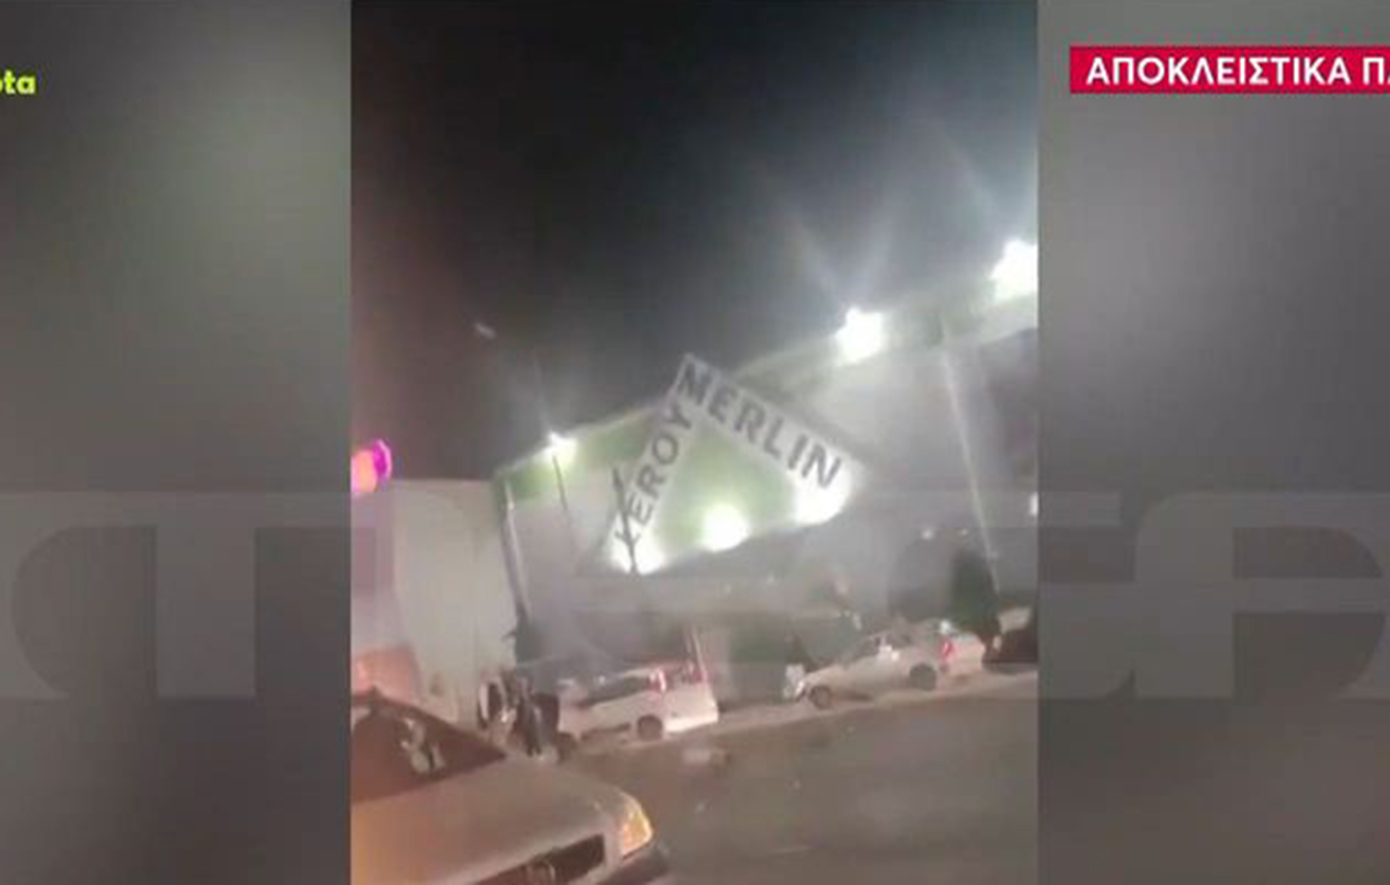 Βίντεο ντοκουμέντο από τις πρώτες στιγμές μετά το τροχαίο στην Πειραιώς – Ο πανικός στο σημείο για την παράσυρση των πέντε πεζών